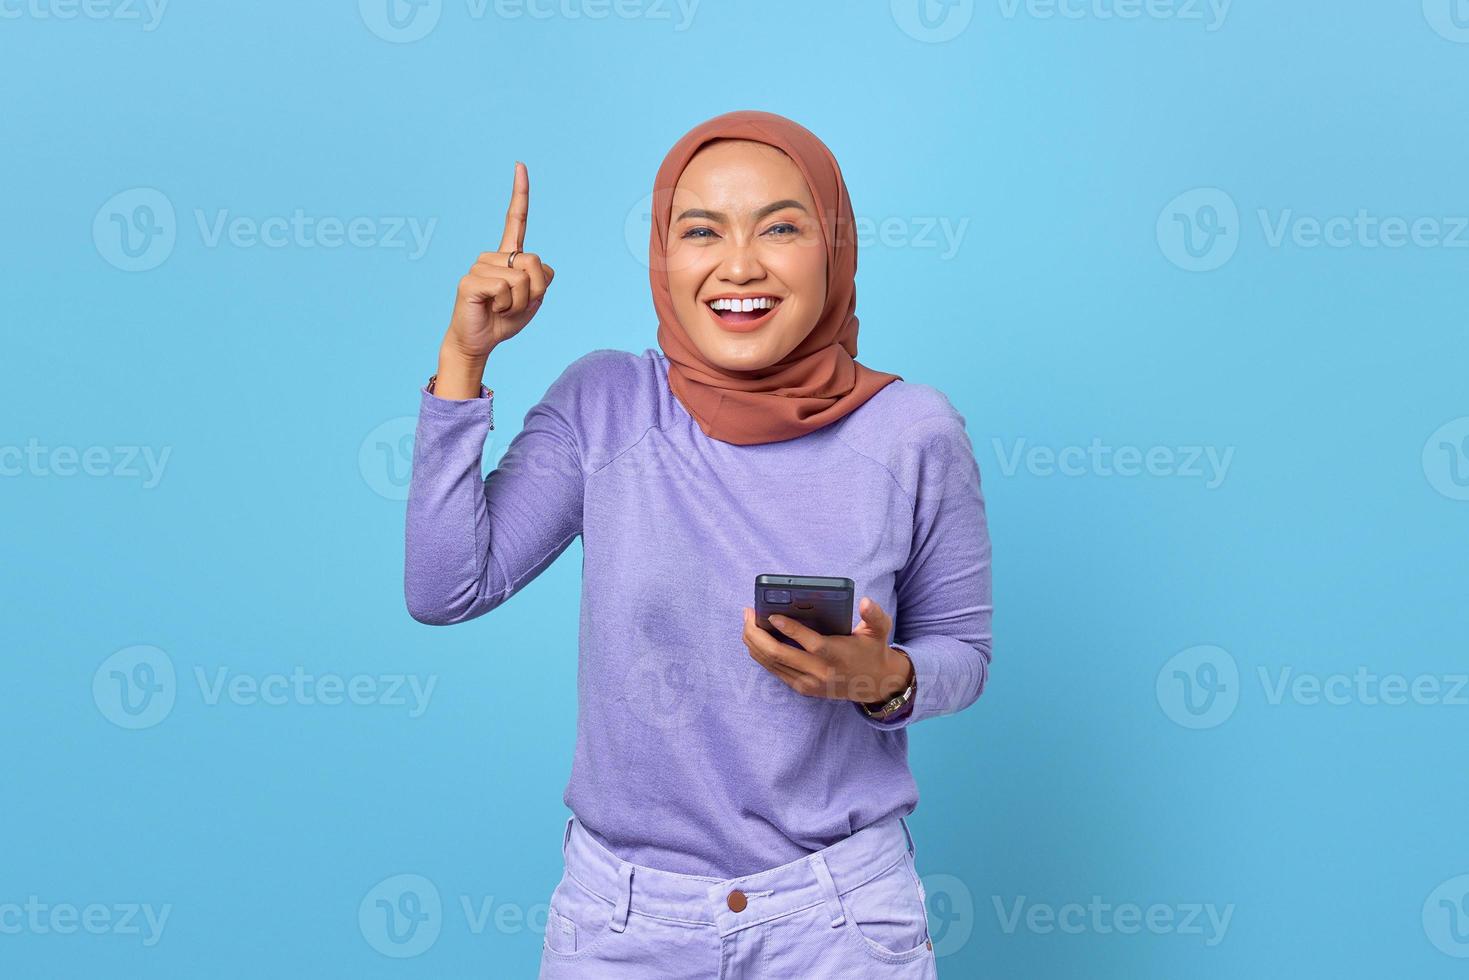 portret van een glimlachende jonge aziatische vrouw die een mobiele telefoon vasthoudt terwijl ze haar vinger op een blauwe achtergrond houdt foto